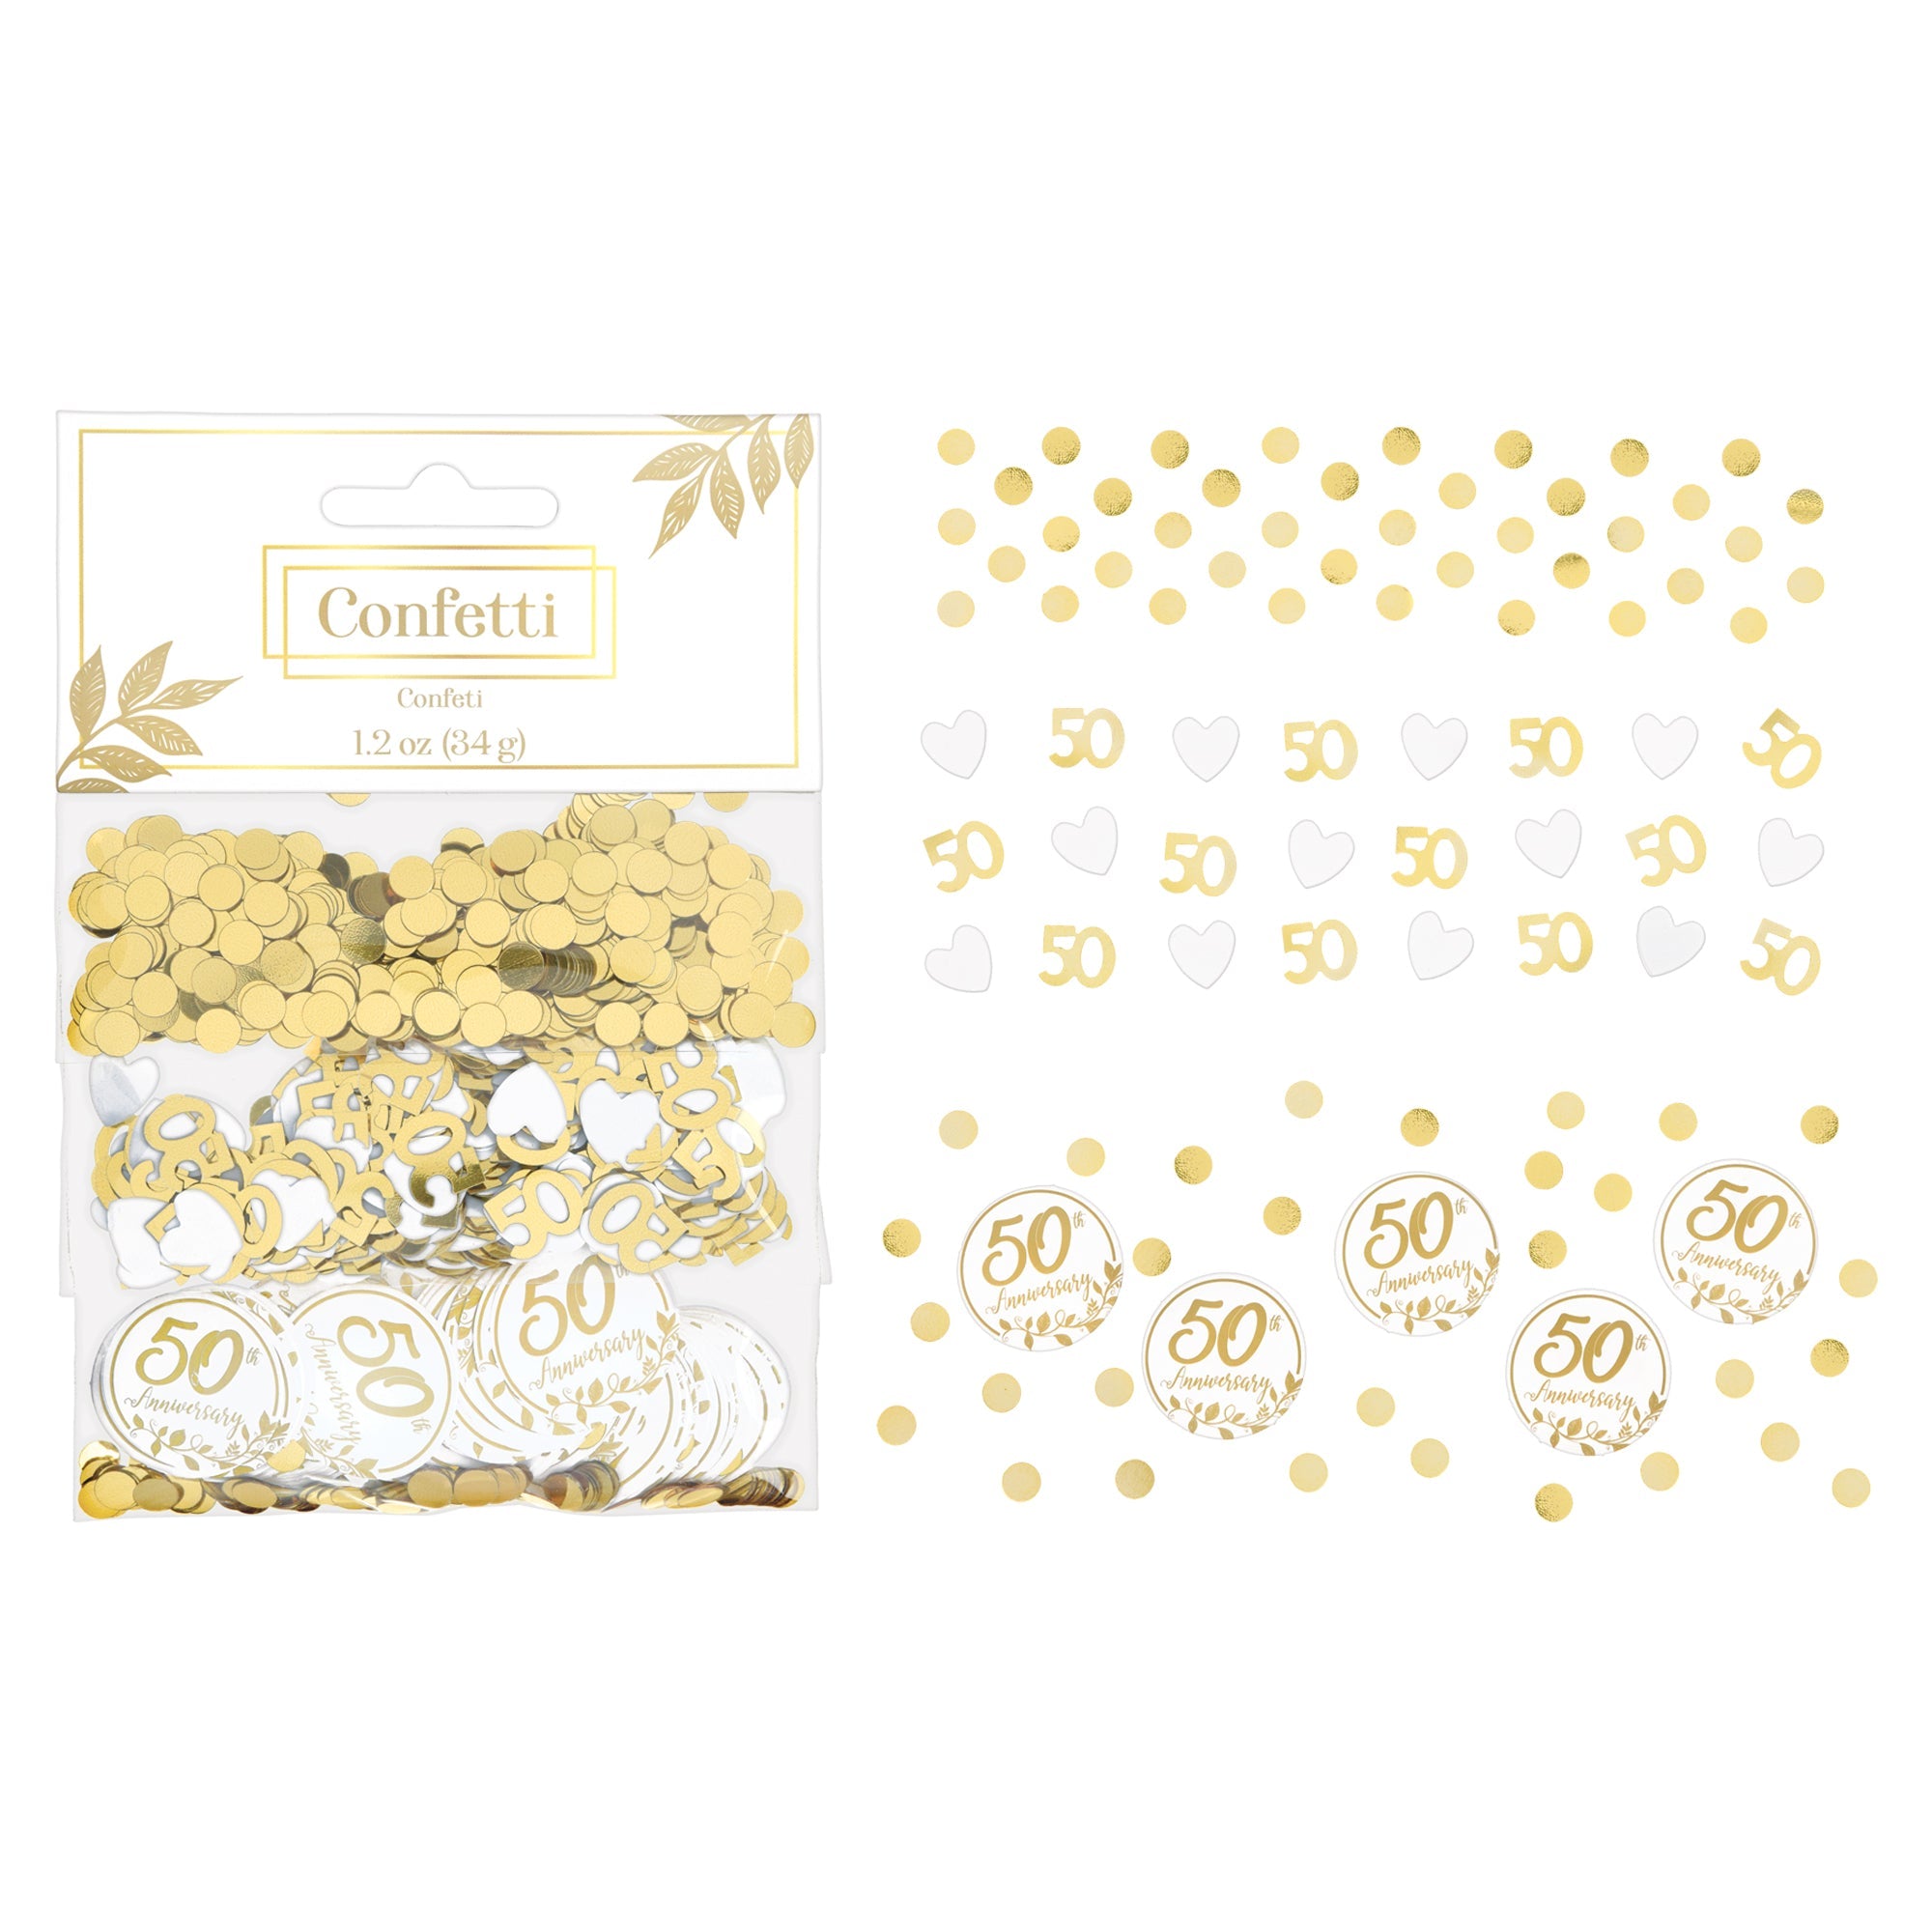 50th Anniversary  Confettis  Foil & Paper  1.2oz